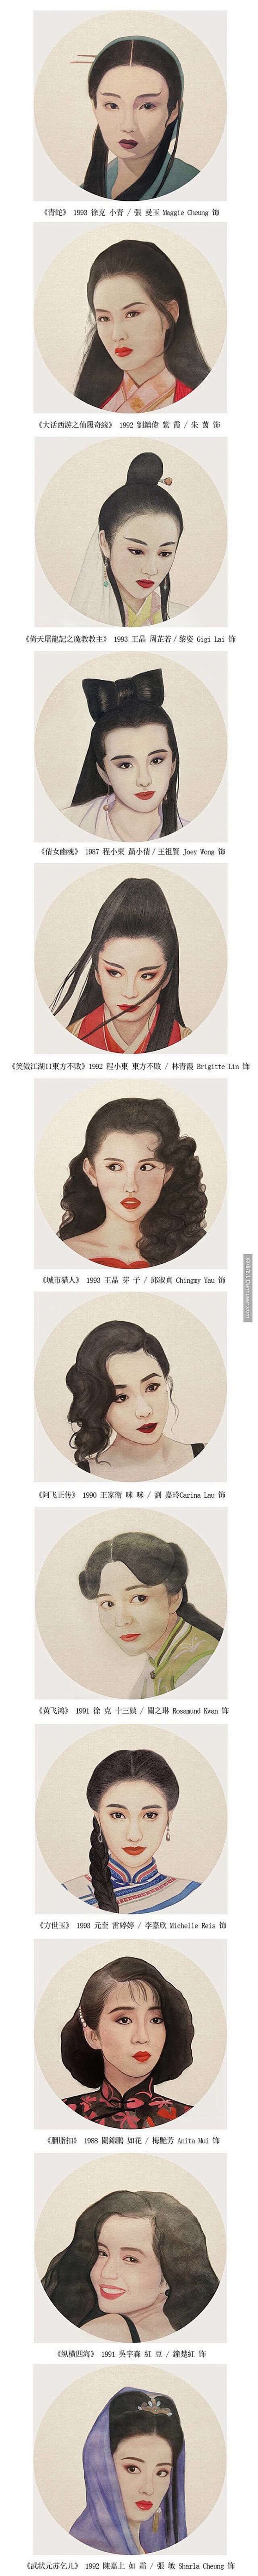 上世纪八九十年代香港女星-王祖贤、邱淑贞...